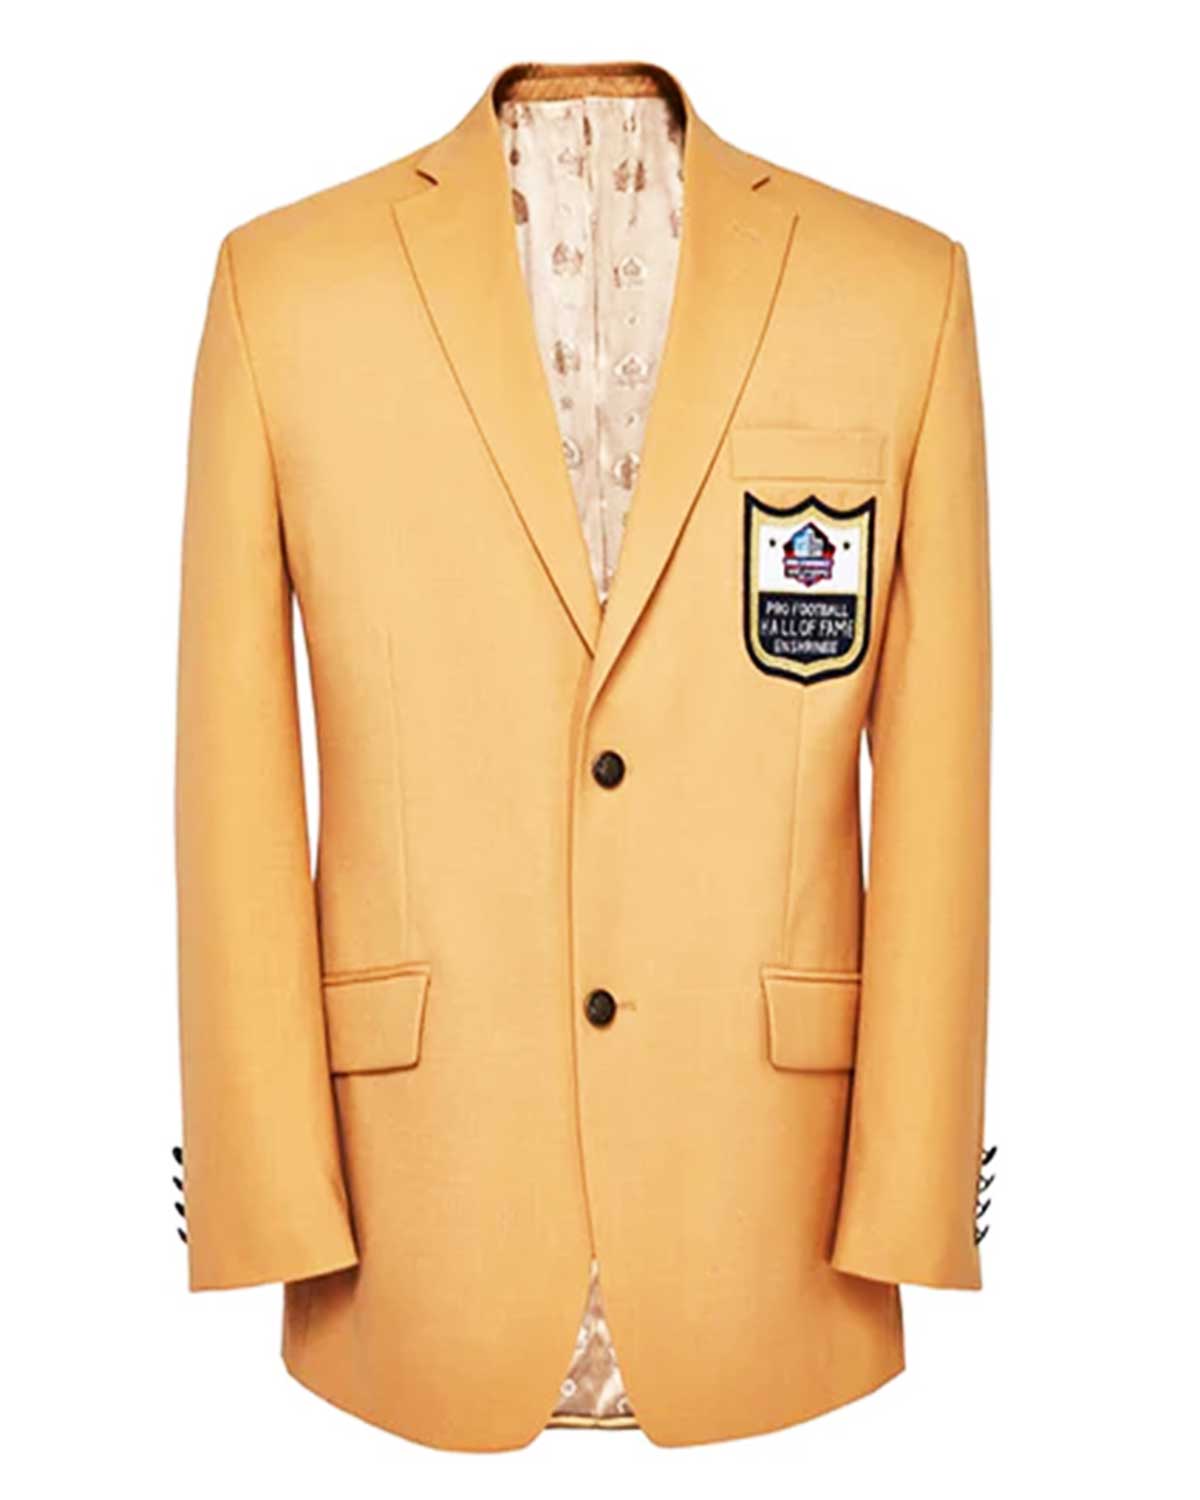 Elite NFL Hall of Fame Gold Jacket